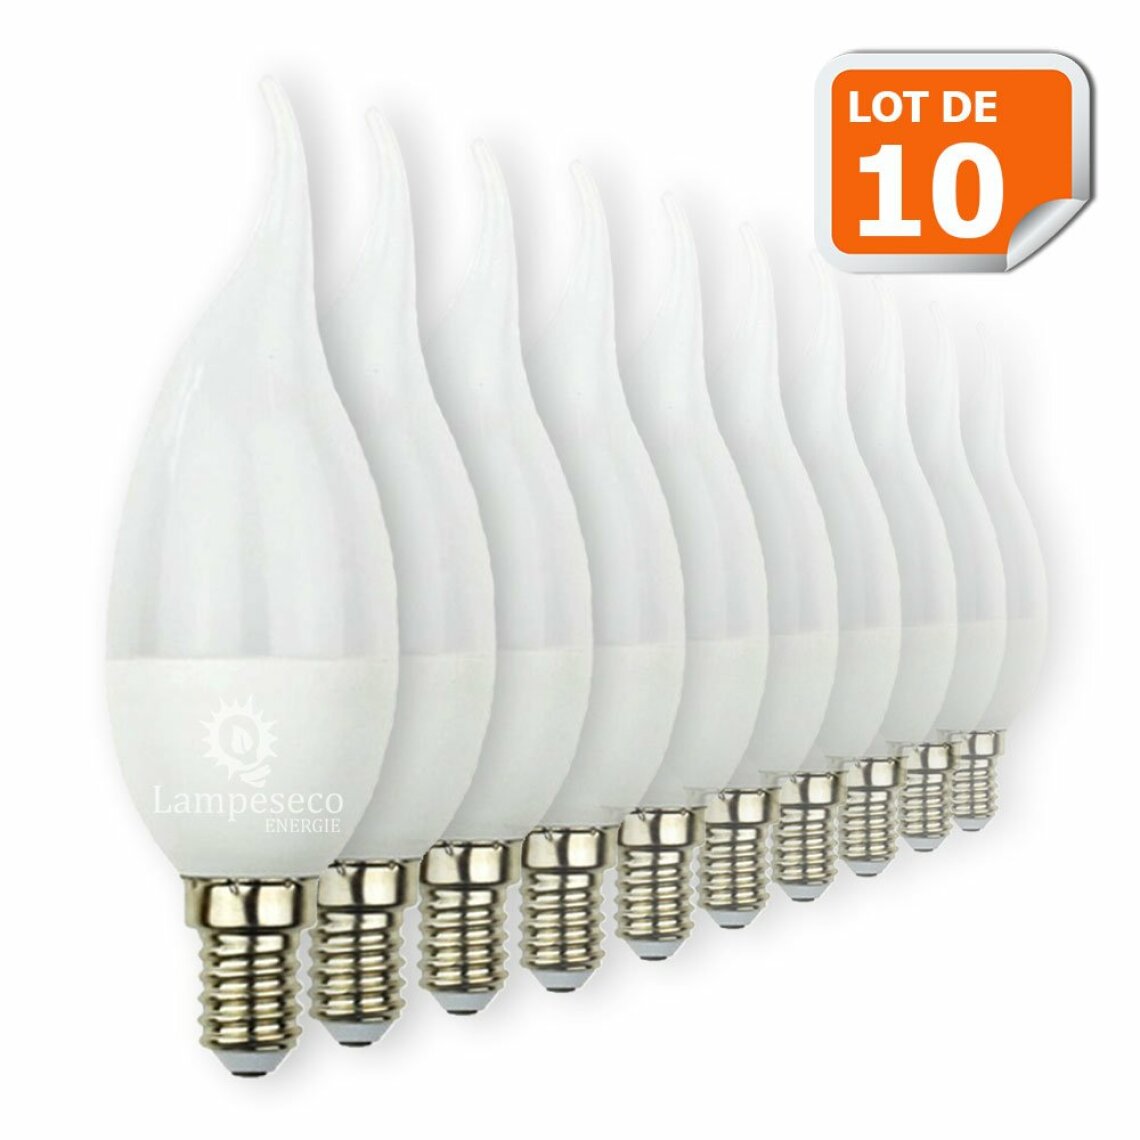 Lampesecoenergie - Lot de 10 Ampoules Led Flamme 5W Super Puissante culot à vis E14 - Ampoules LED